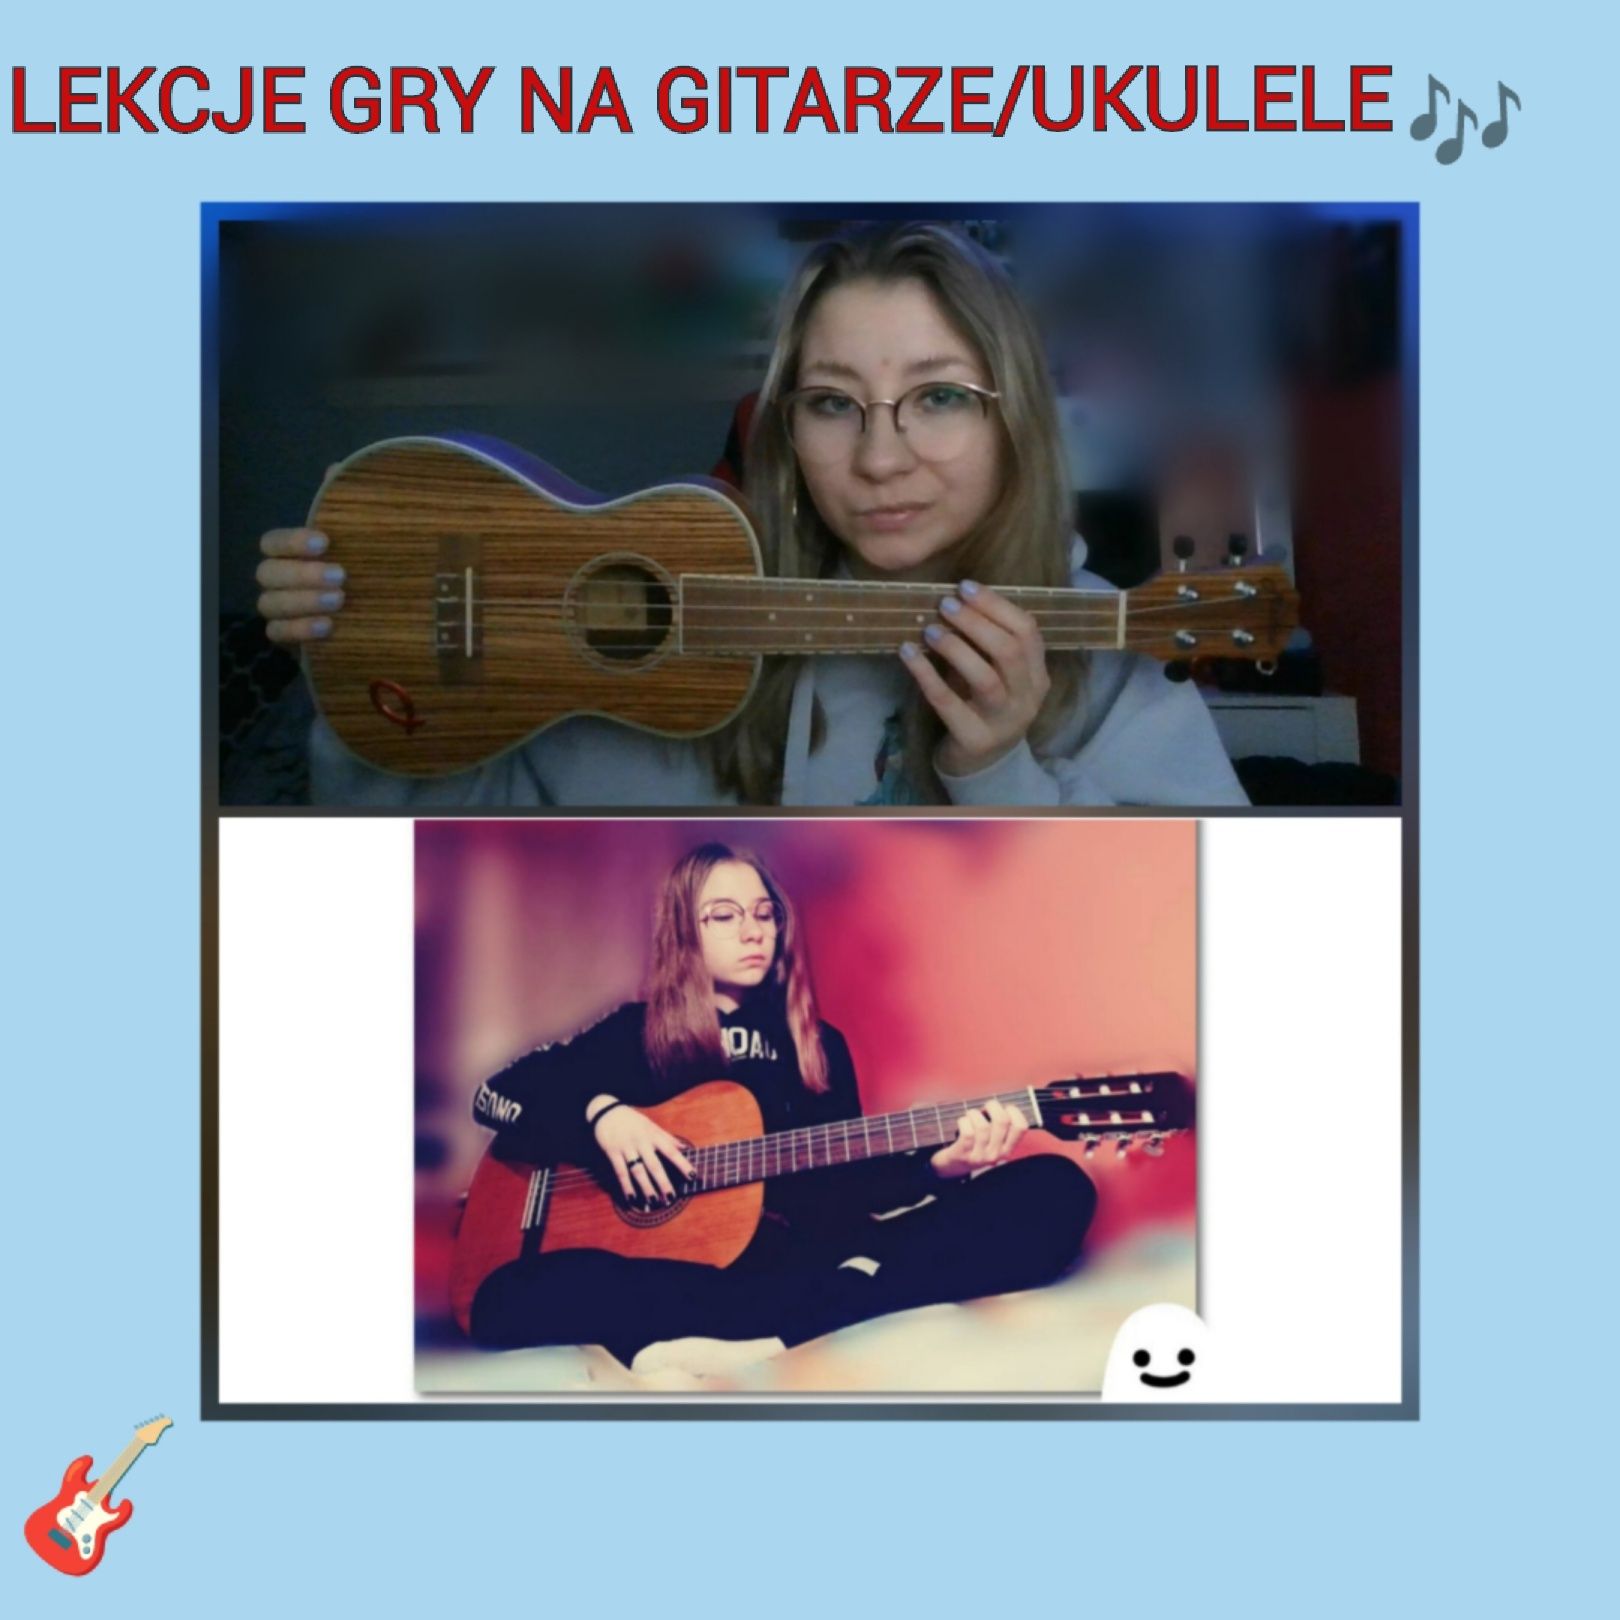 Lekcje gry na gitarze/ukulele